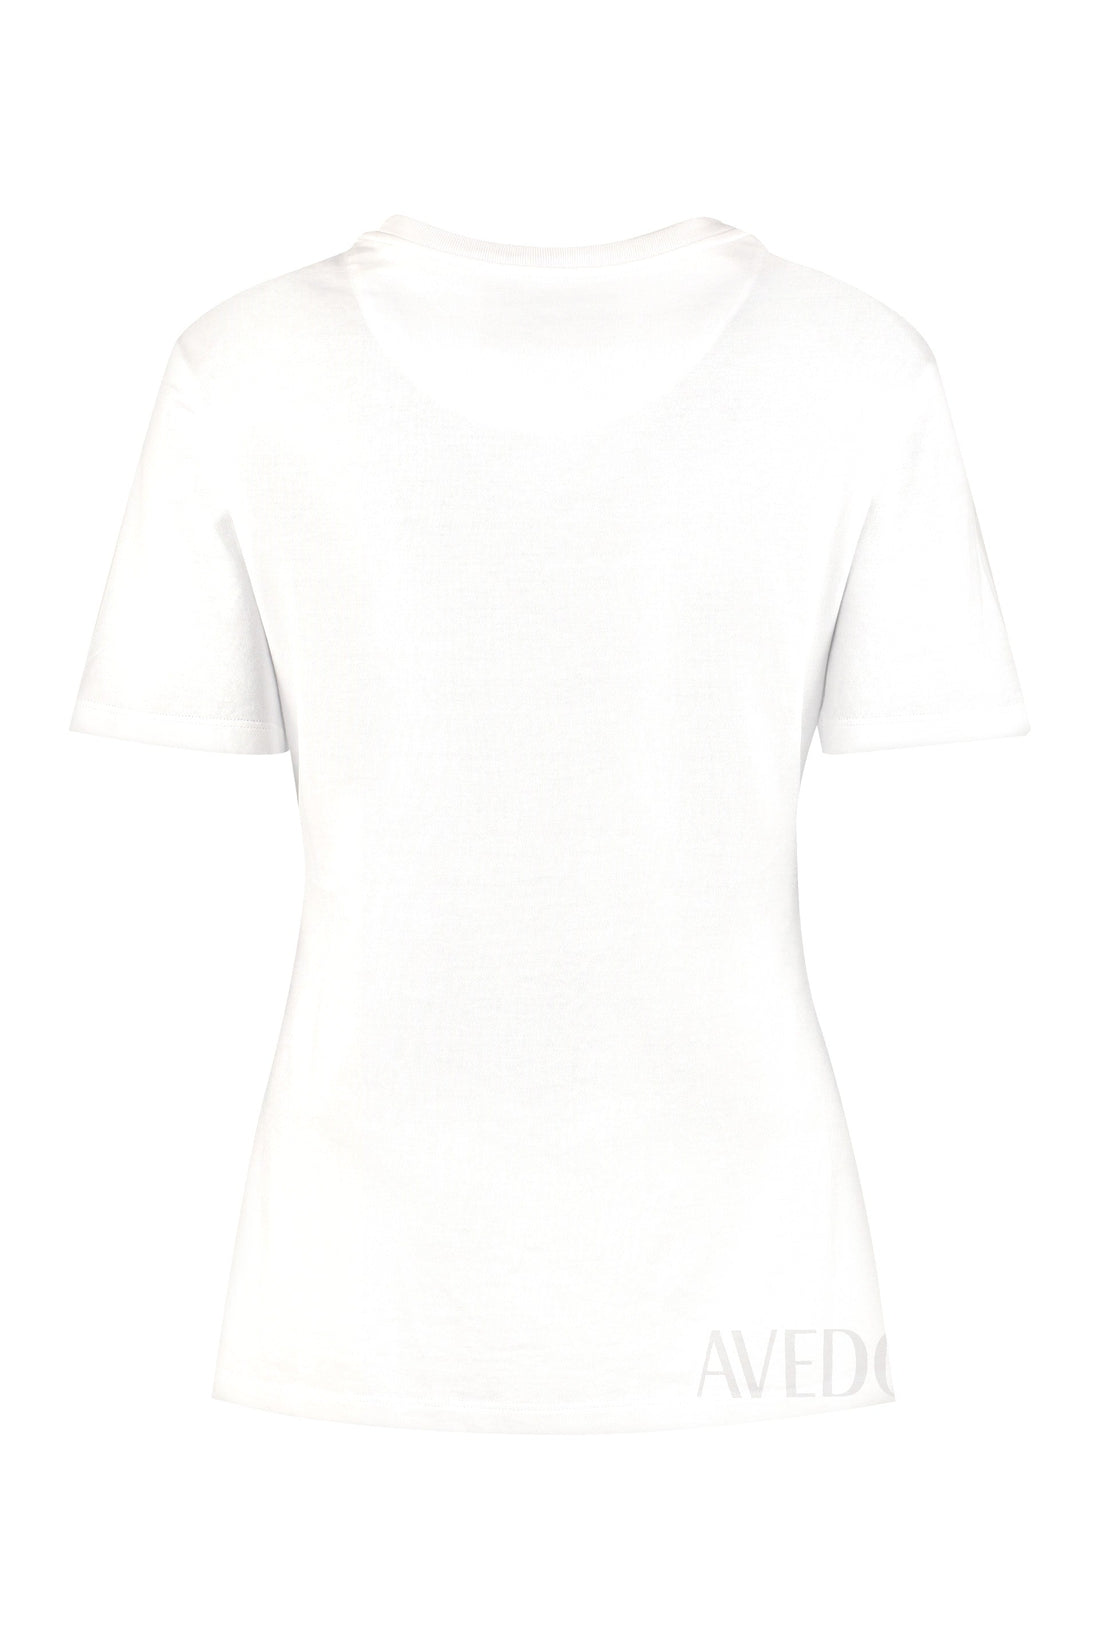 Versace-OUTLET-SALE-Avedon x Versace printed cotton T-shirt-ARCHIVIST